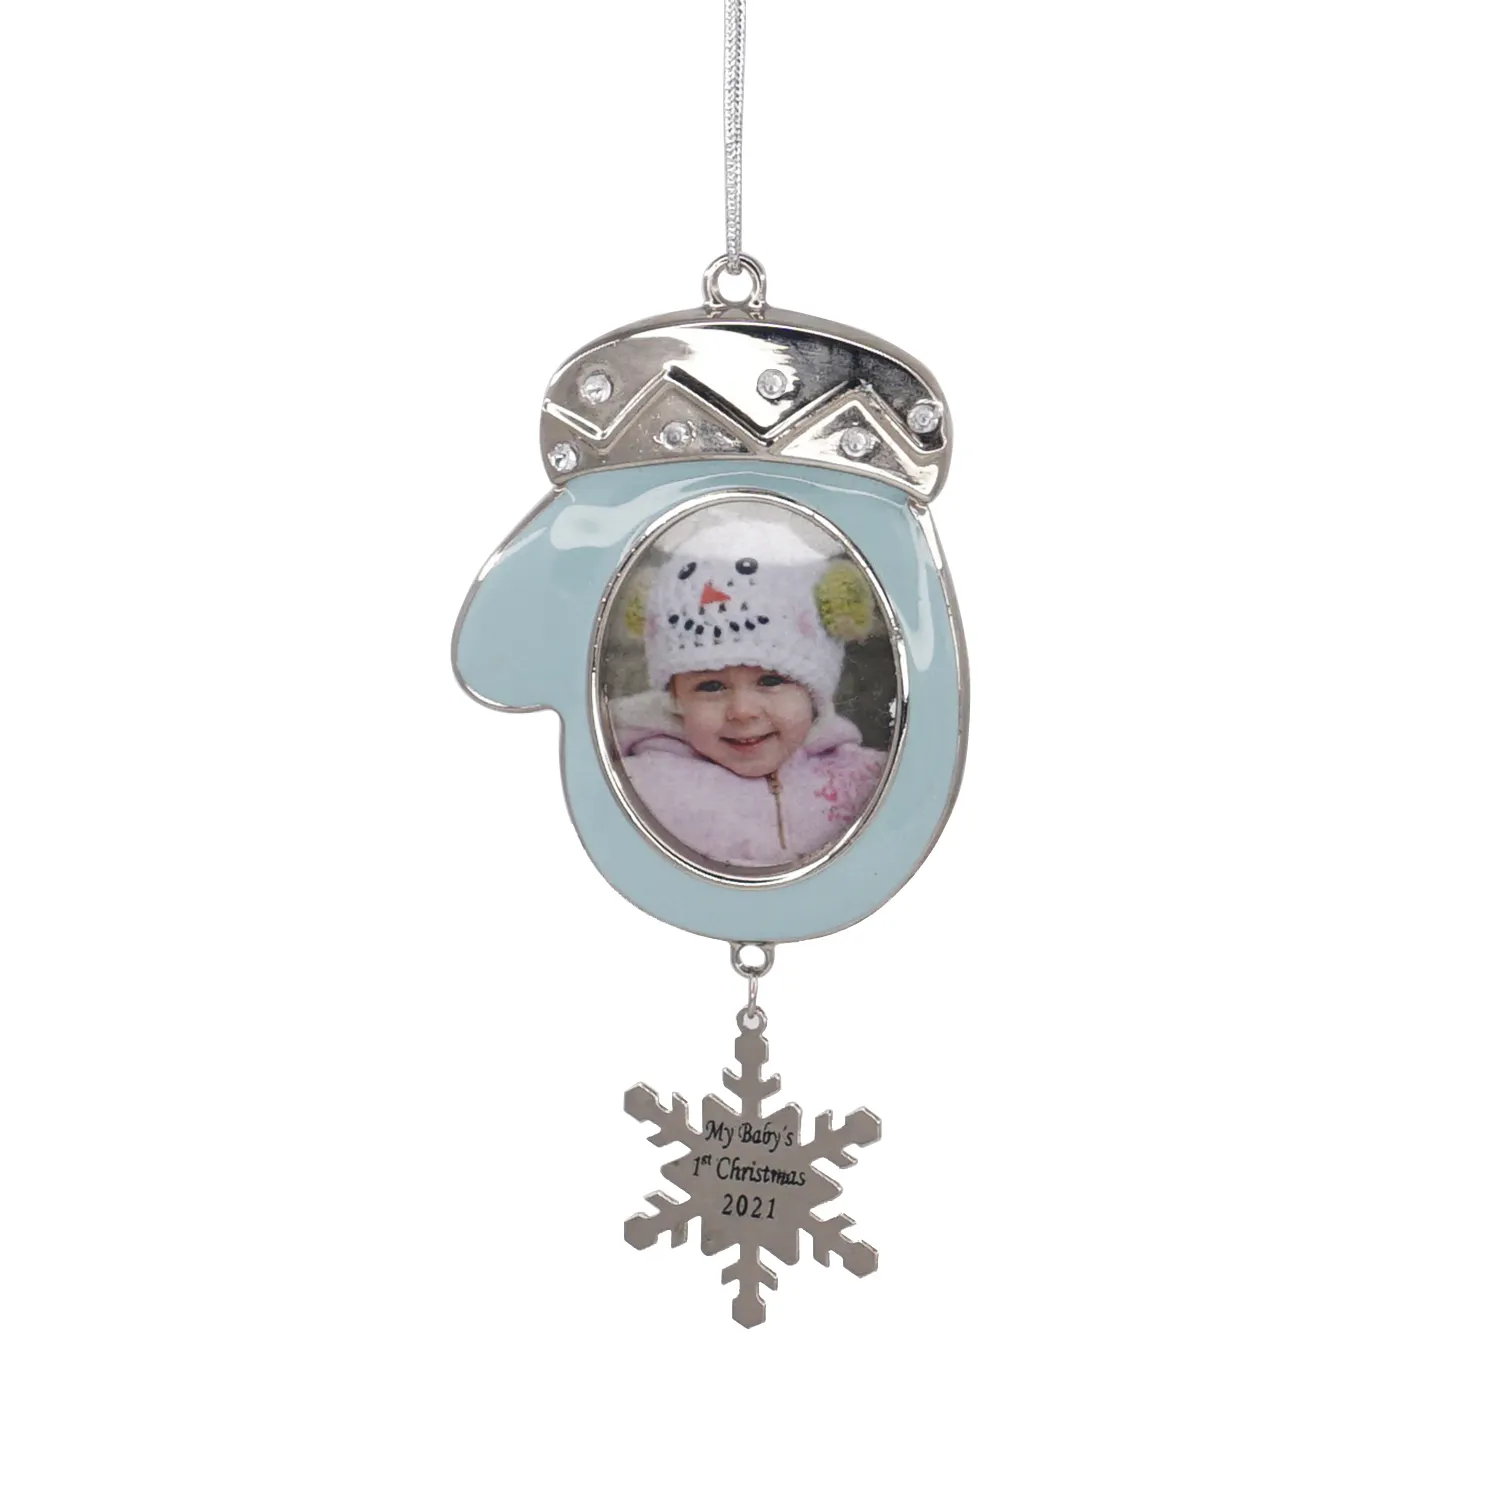 Erstes Jahr Baby Geschenk Home Family Decor Ornamente Metall Foto rahmen Ornamente Für Baby Geschenk Weihnachts baum Ornament